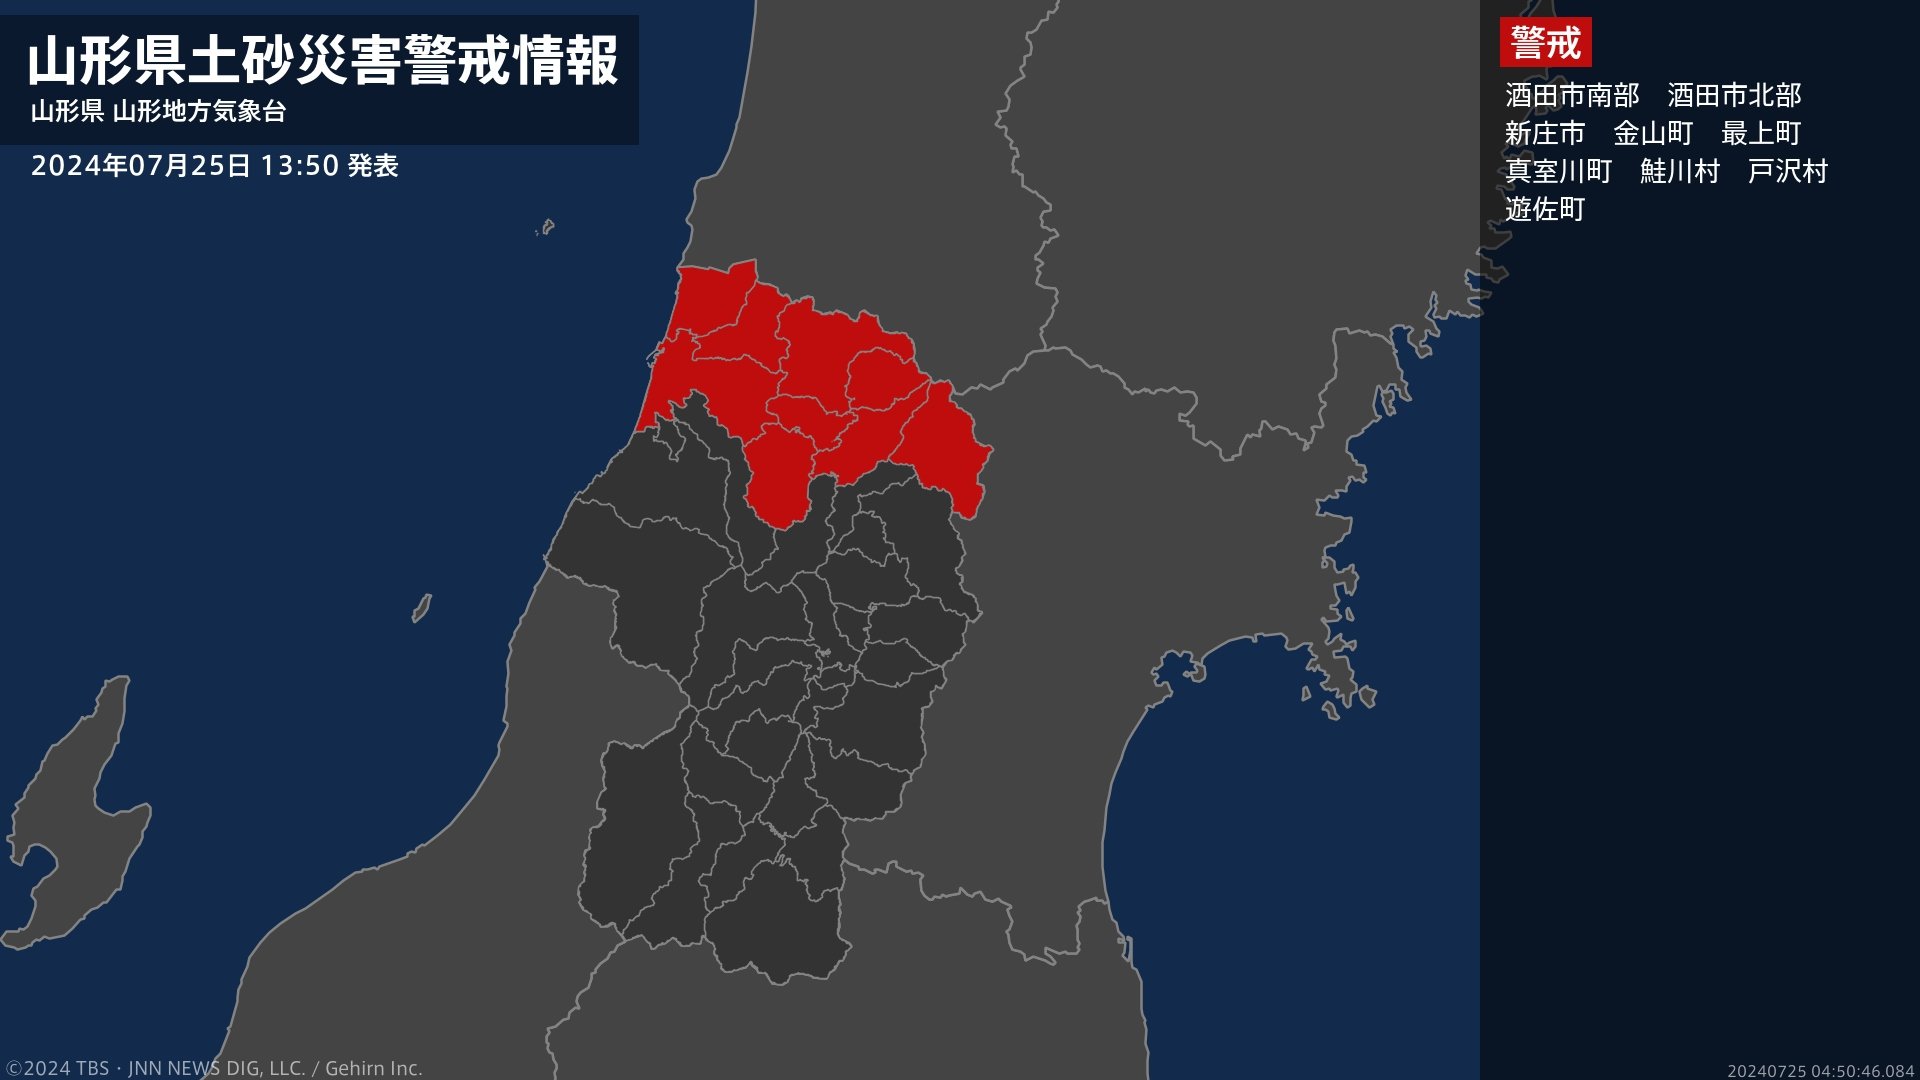 【土砂災害警戒情報】山形県・最上町、戸沢村に発表